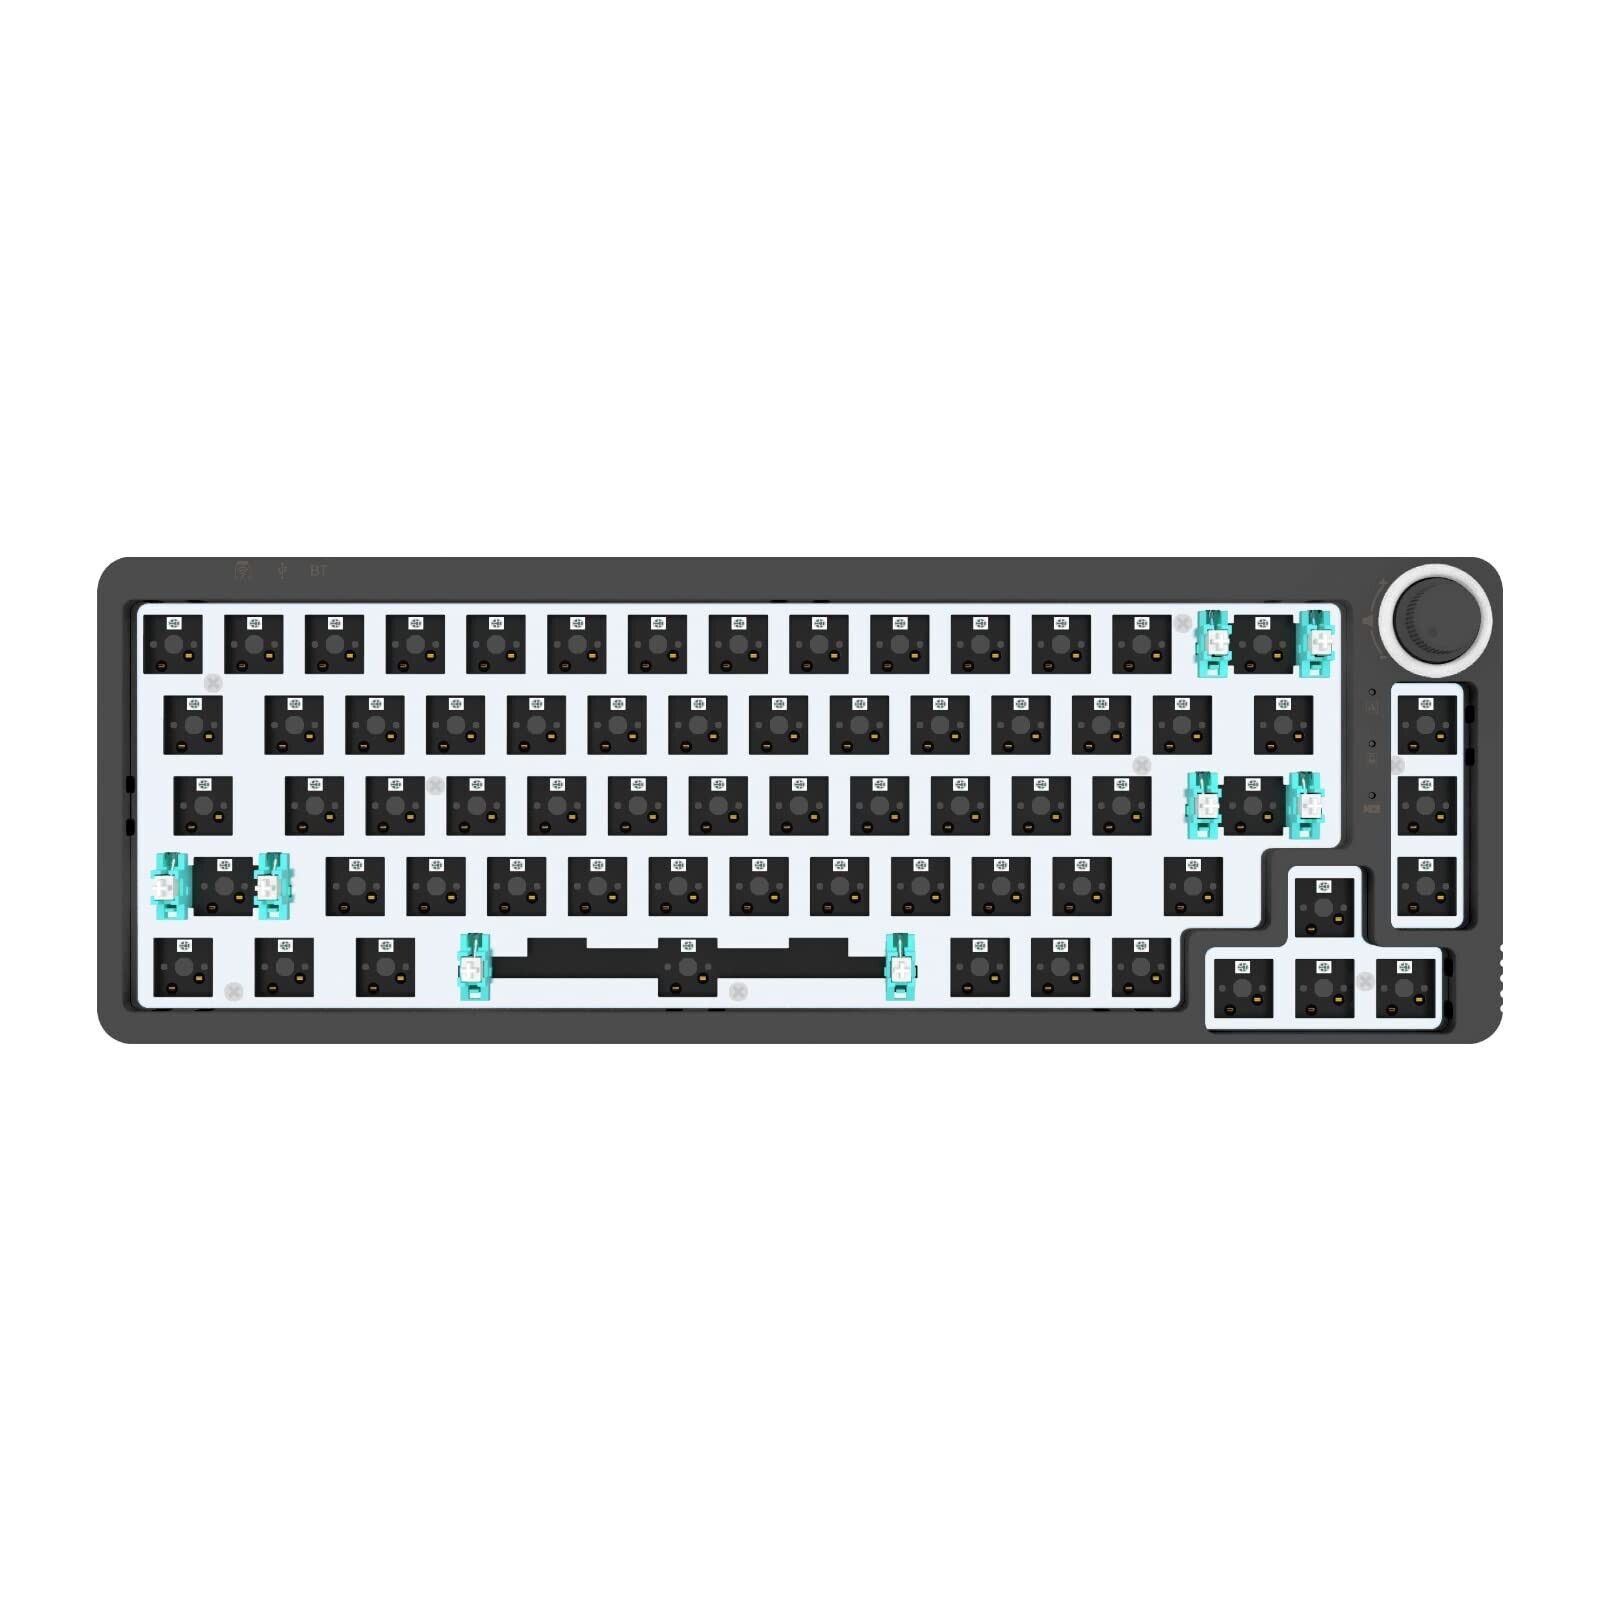 GK GAMAKAY LK67 65% RGB Modular DIY Mechanical Keyboard, 67 Keys Hot Swappabl...